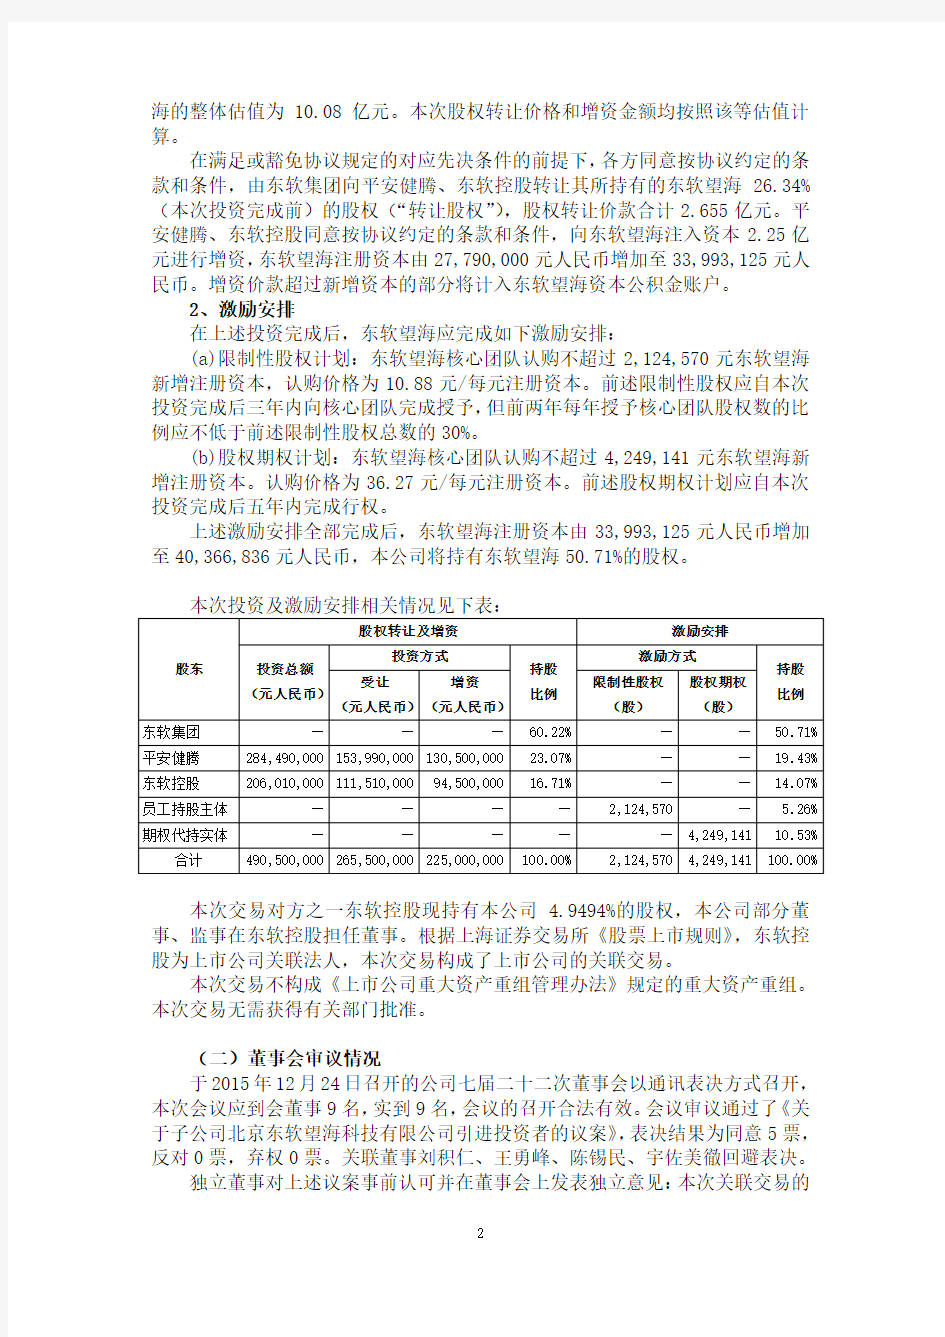 东软集团股份有限公司关于子公司北京东软望海科技有限公司